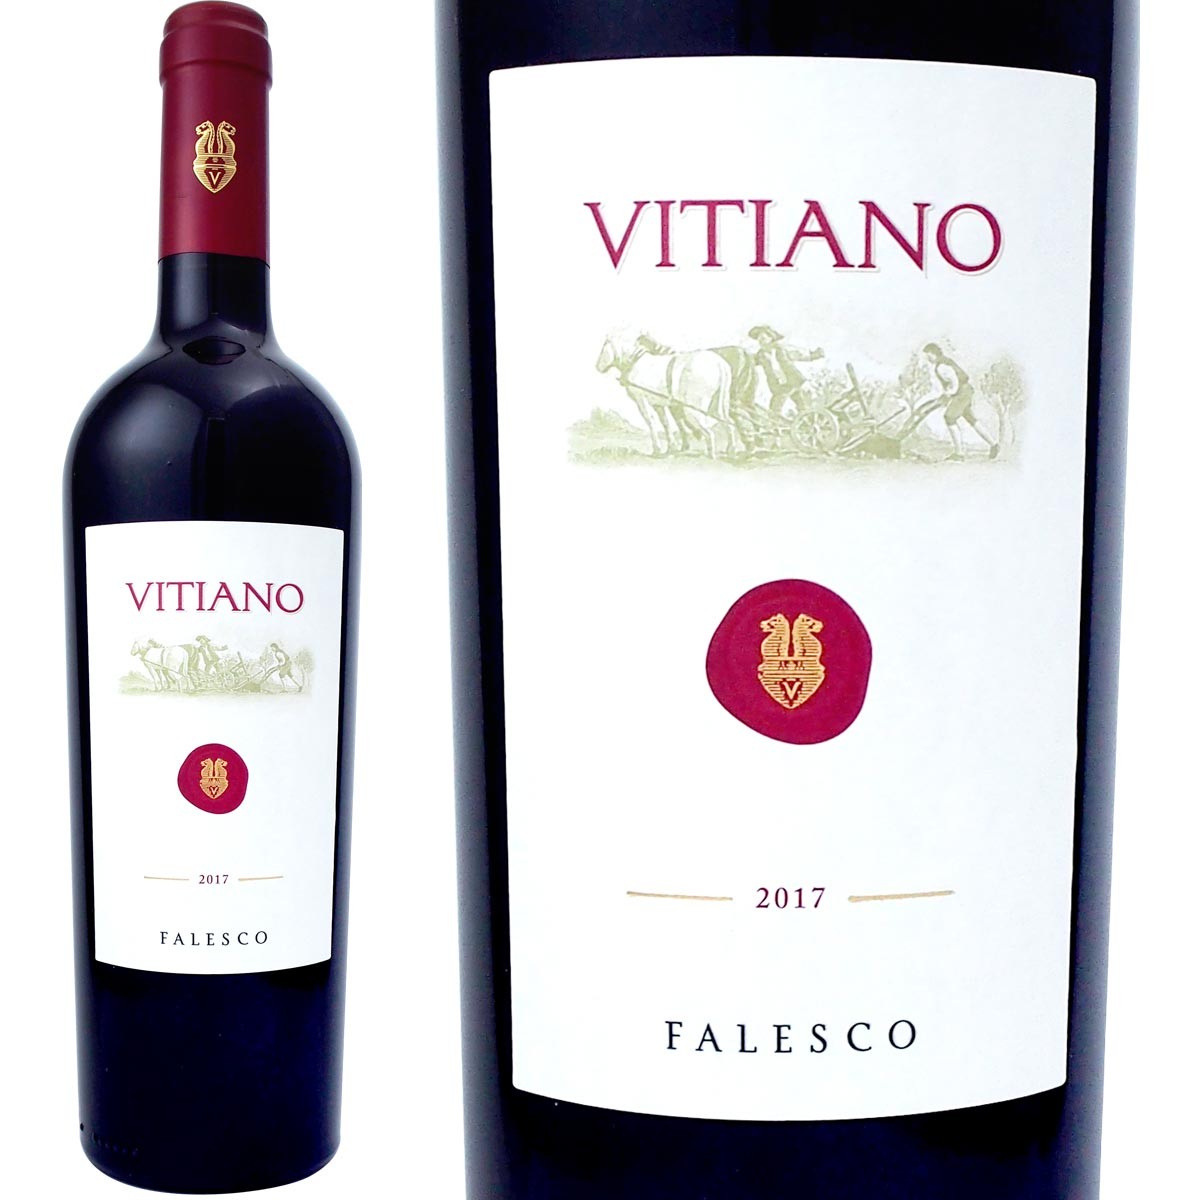 ファレスコ ヴィティアーノ・ウンブリア・ロッソ 2017 750mlびん 1本 ワイン 赤ワインの商品画像